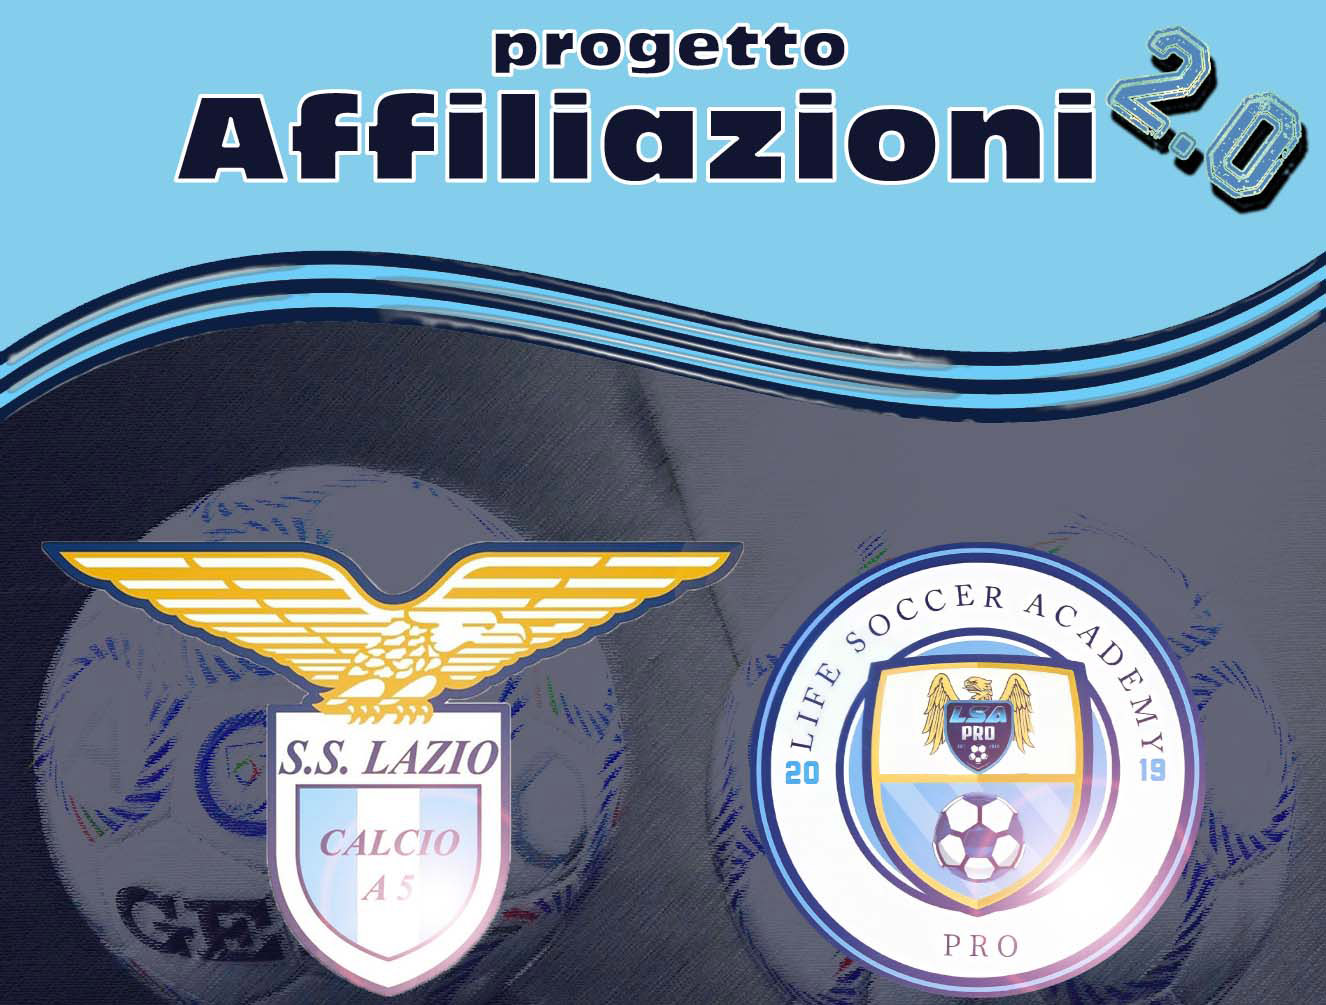 La Life Soccer Academy entra nella famiglia delle affiliazioni della Lazio